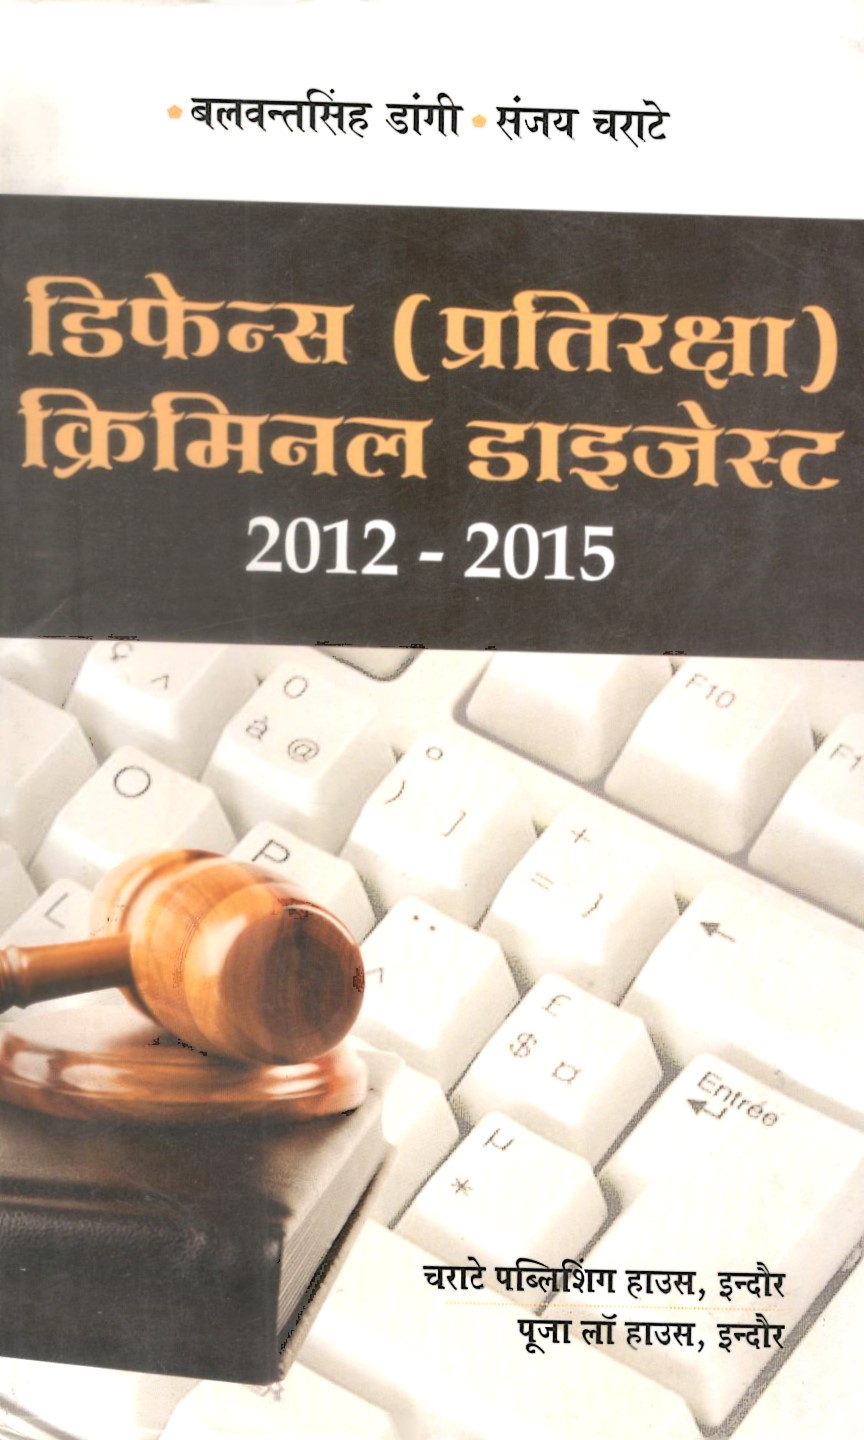 बलवंत सिंह डांगी, संजय चराटे – डिफेन्स (प्रतिरक्षा) क्रिमिनल डाइजेस्ट (2004-2012) / Defence Criminal Digest (2012-2015)